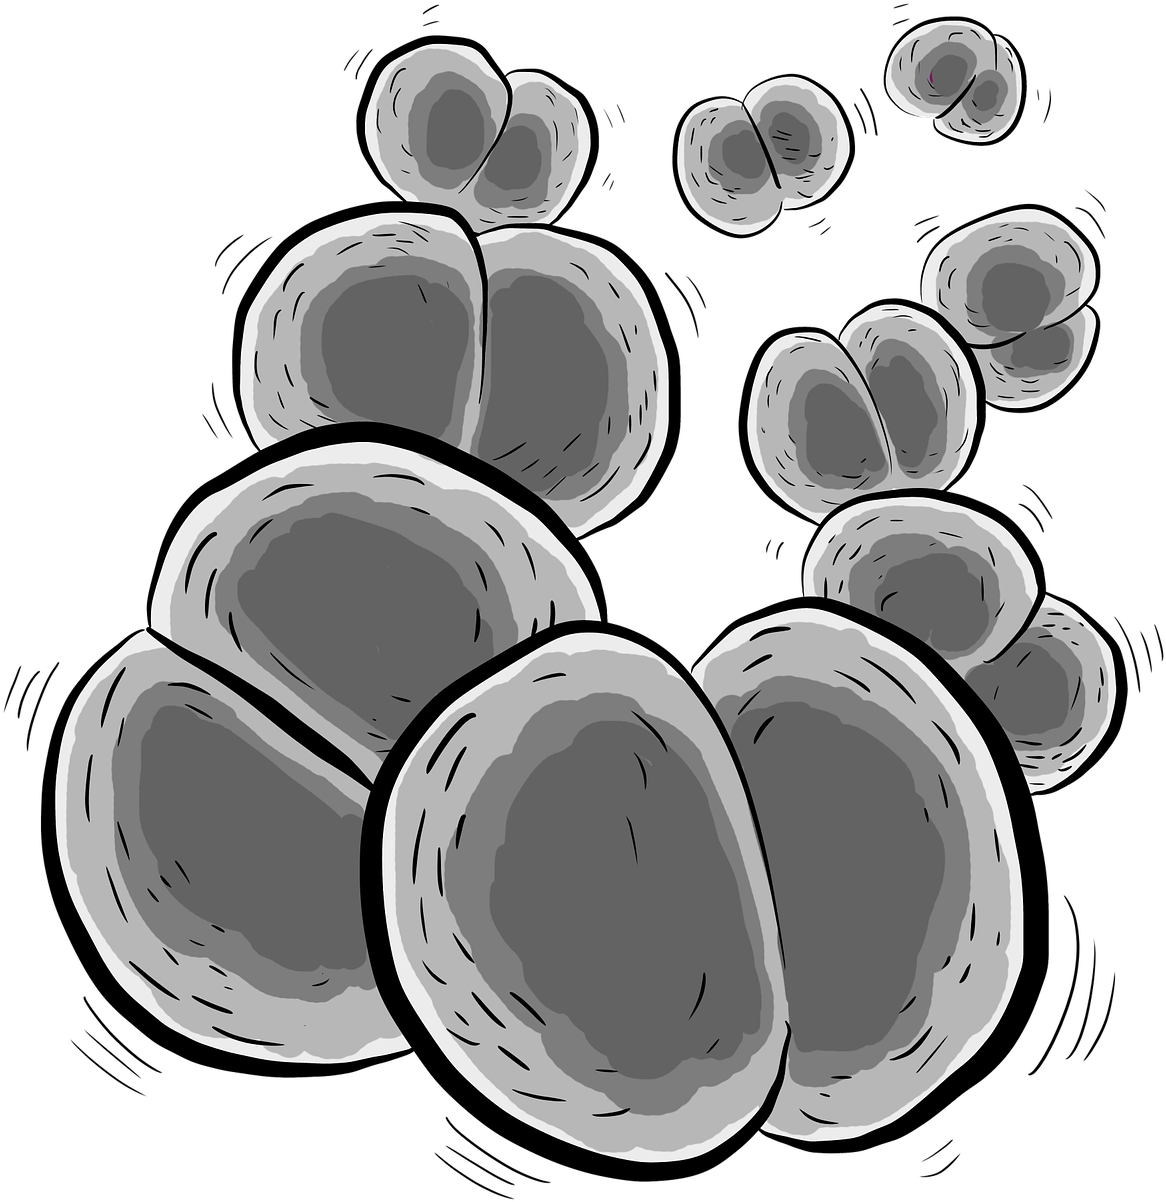 Bacteria Bacterium Neisseria Meningitidis - Meningococcus (1280x1280)